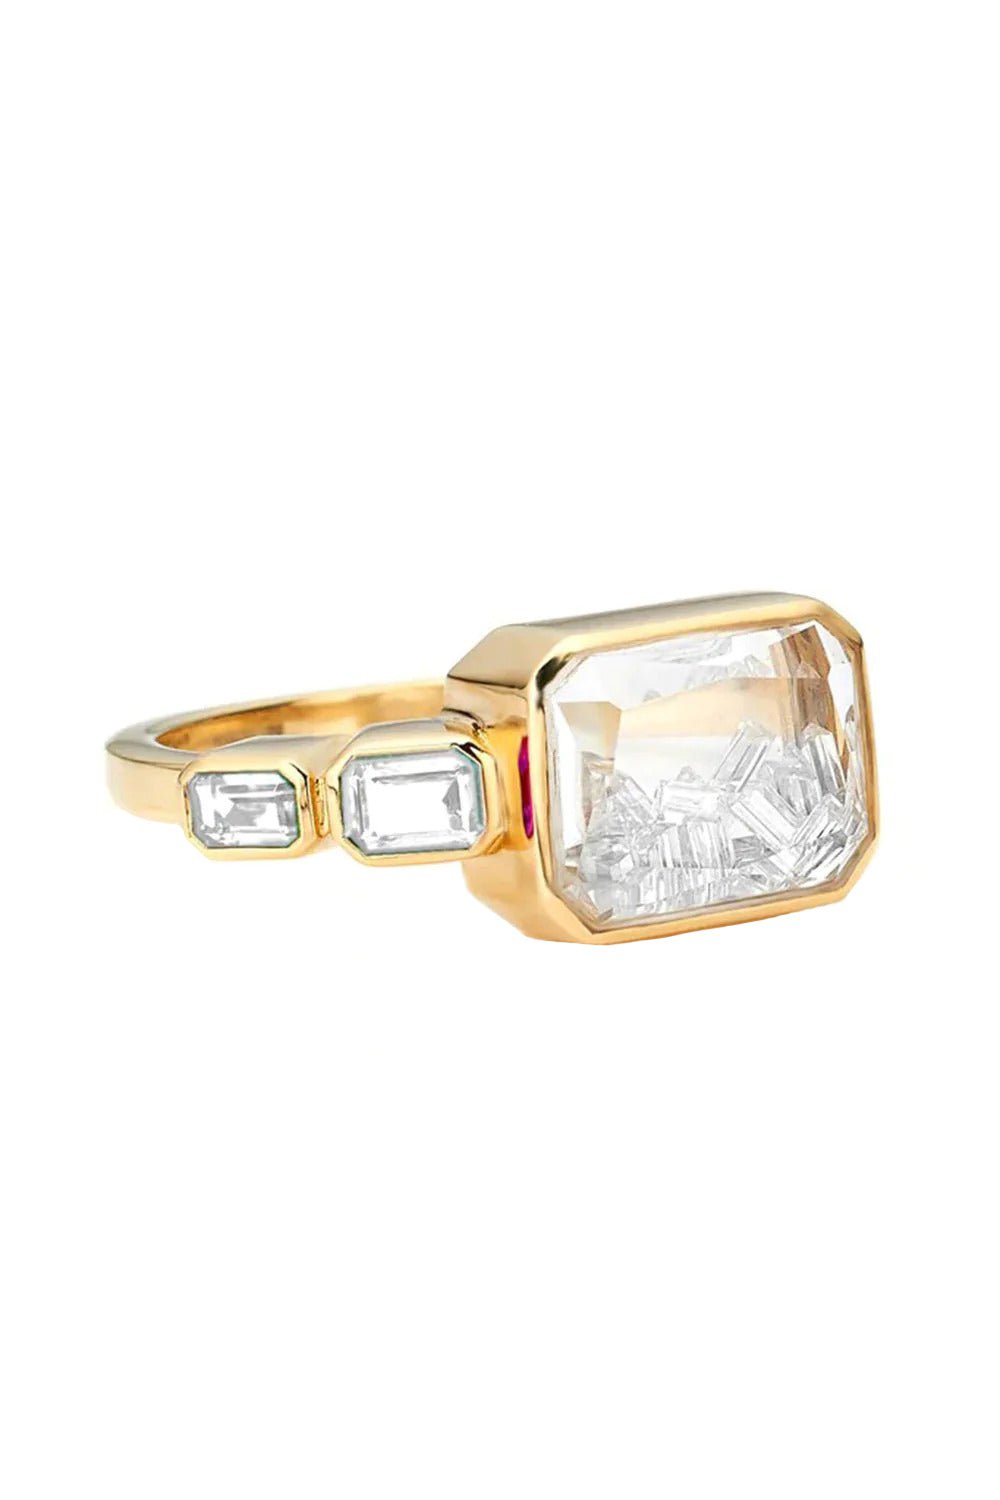 MORITZ GLIK-Bala Diamond Ring-YELLOW GOLD